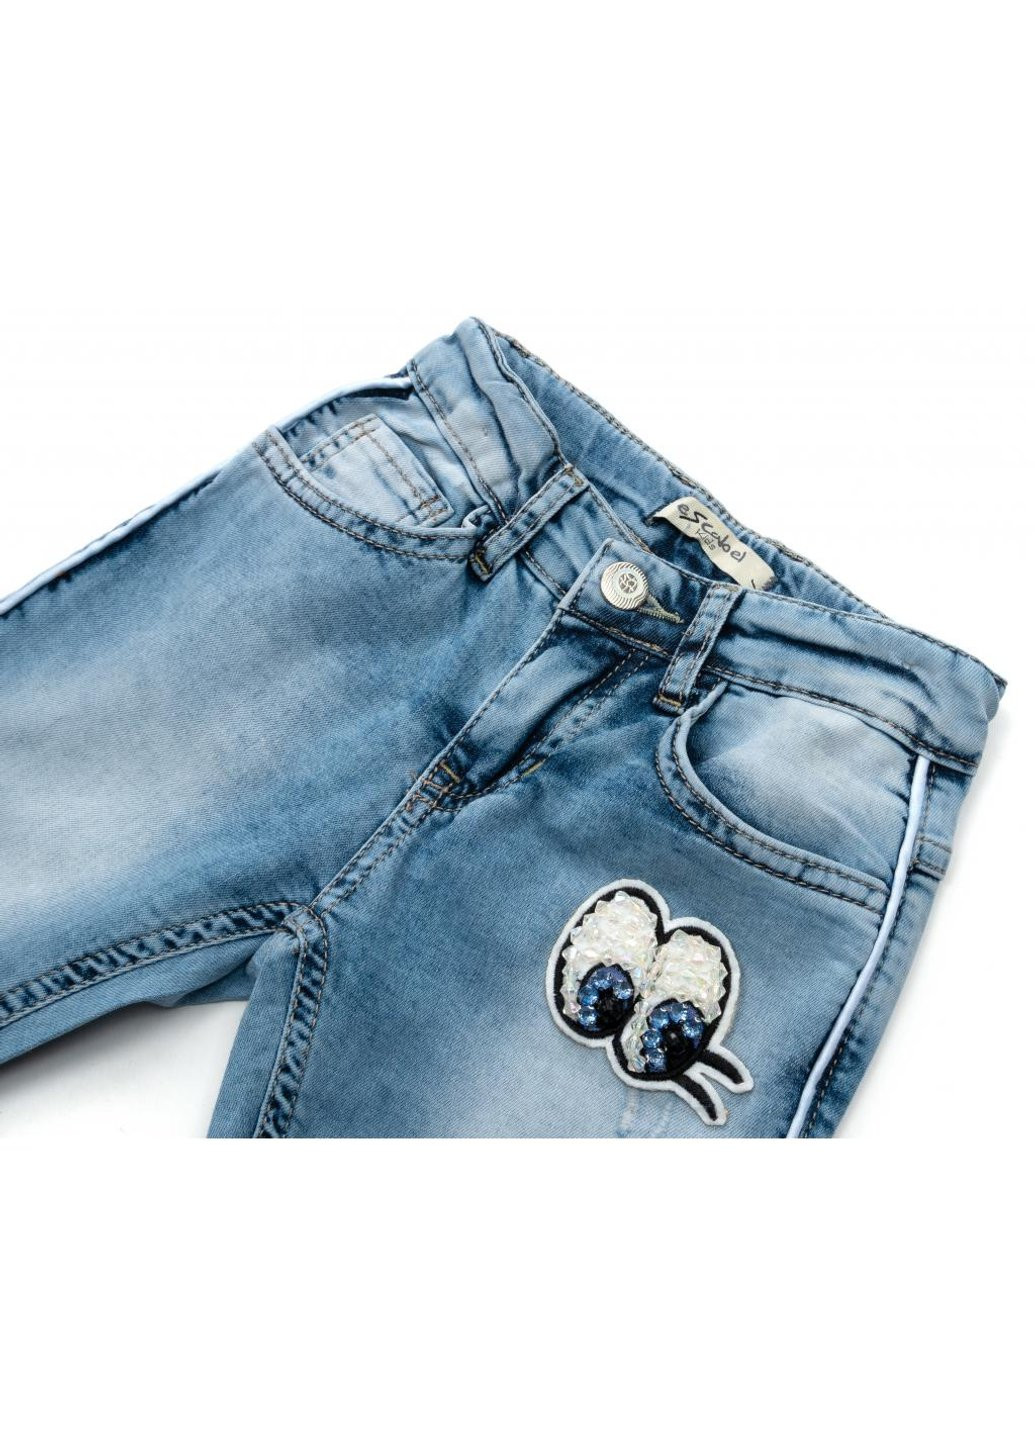 Голубые демисезонные джинсы зауженые (esc-1981-2-152g-blue) Breeze